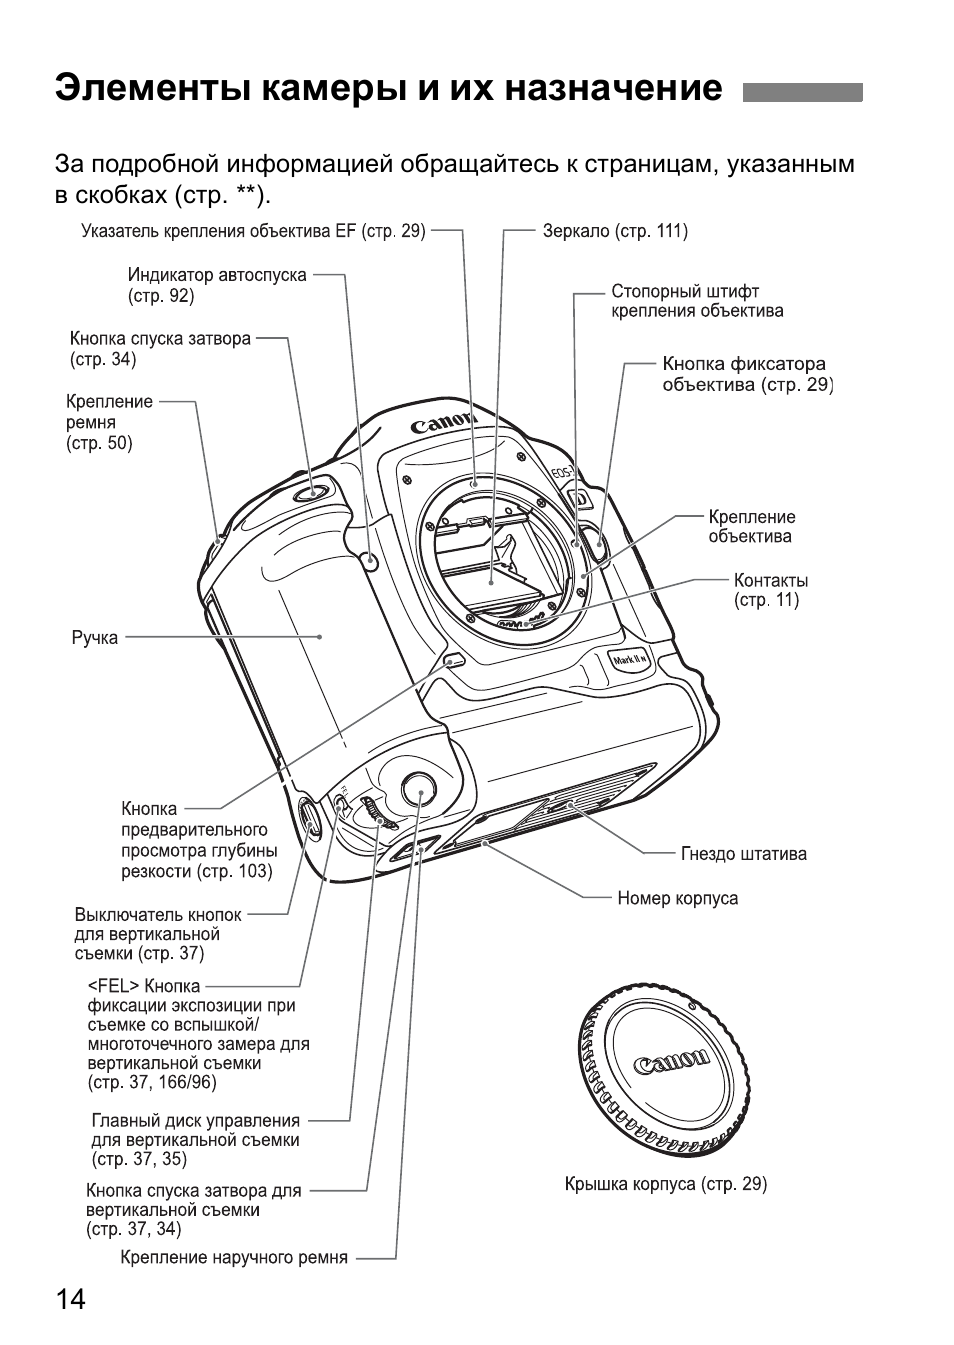 Элементы камеры и их назначение | Инструкция по эксплуатации Canon EOS 1D Mark II N | Страница 14 / 196